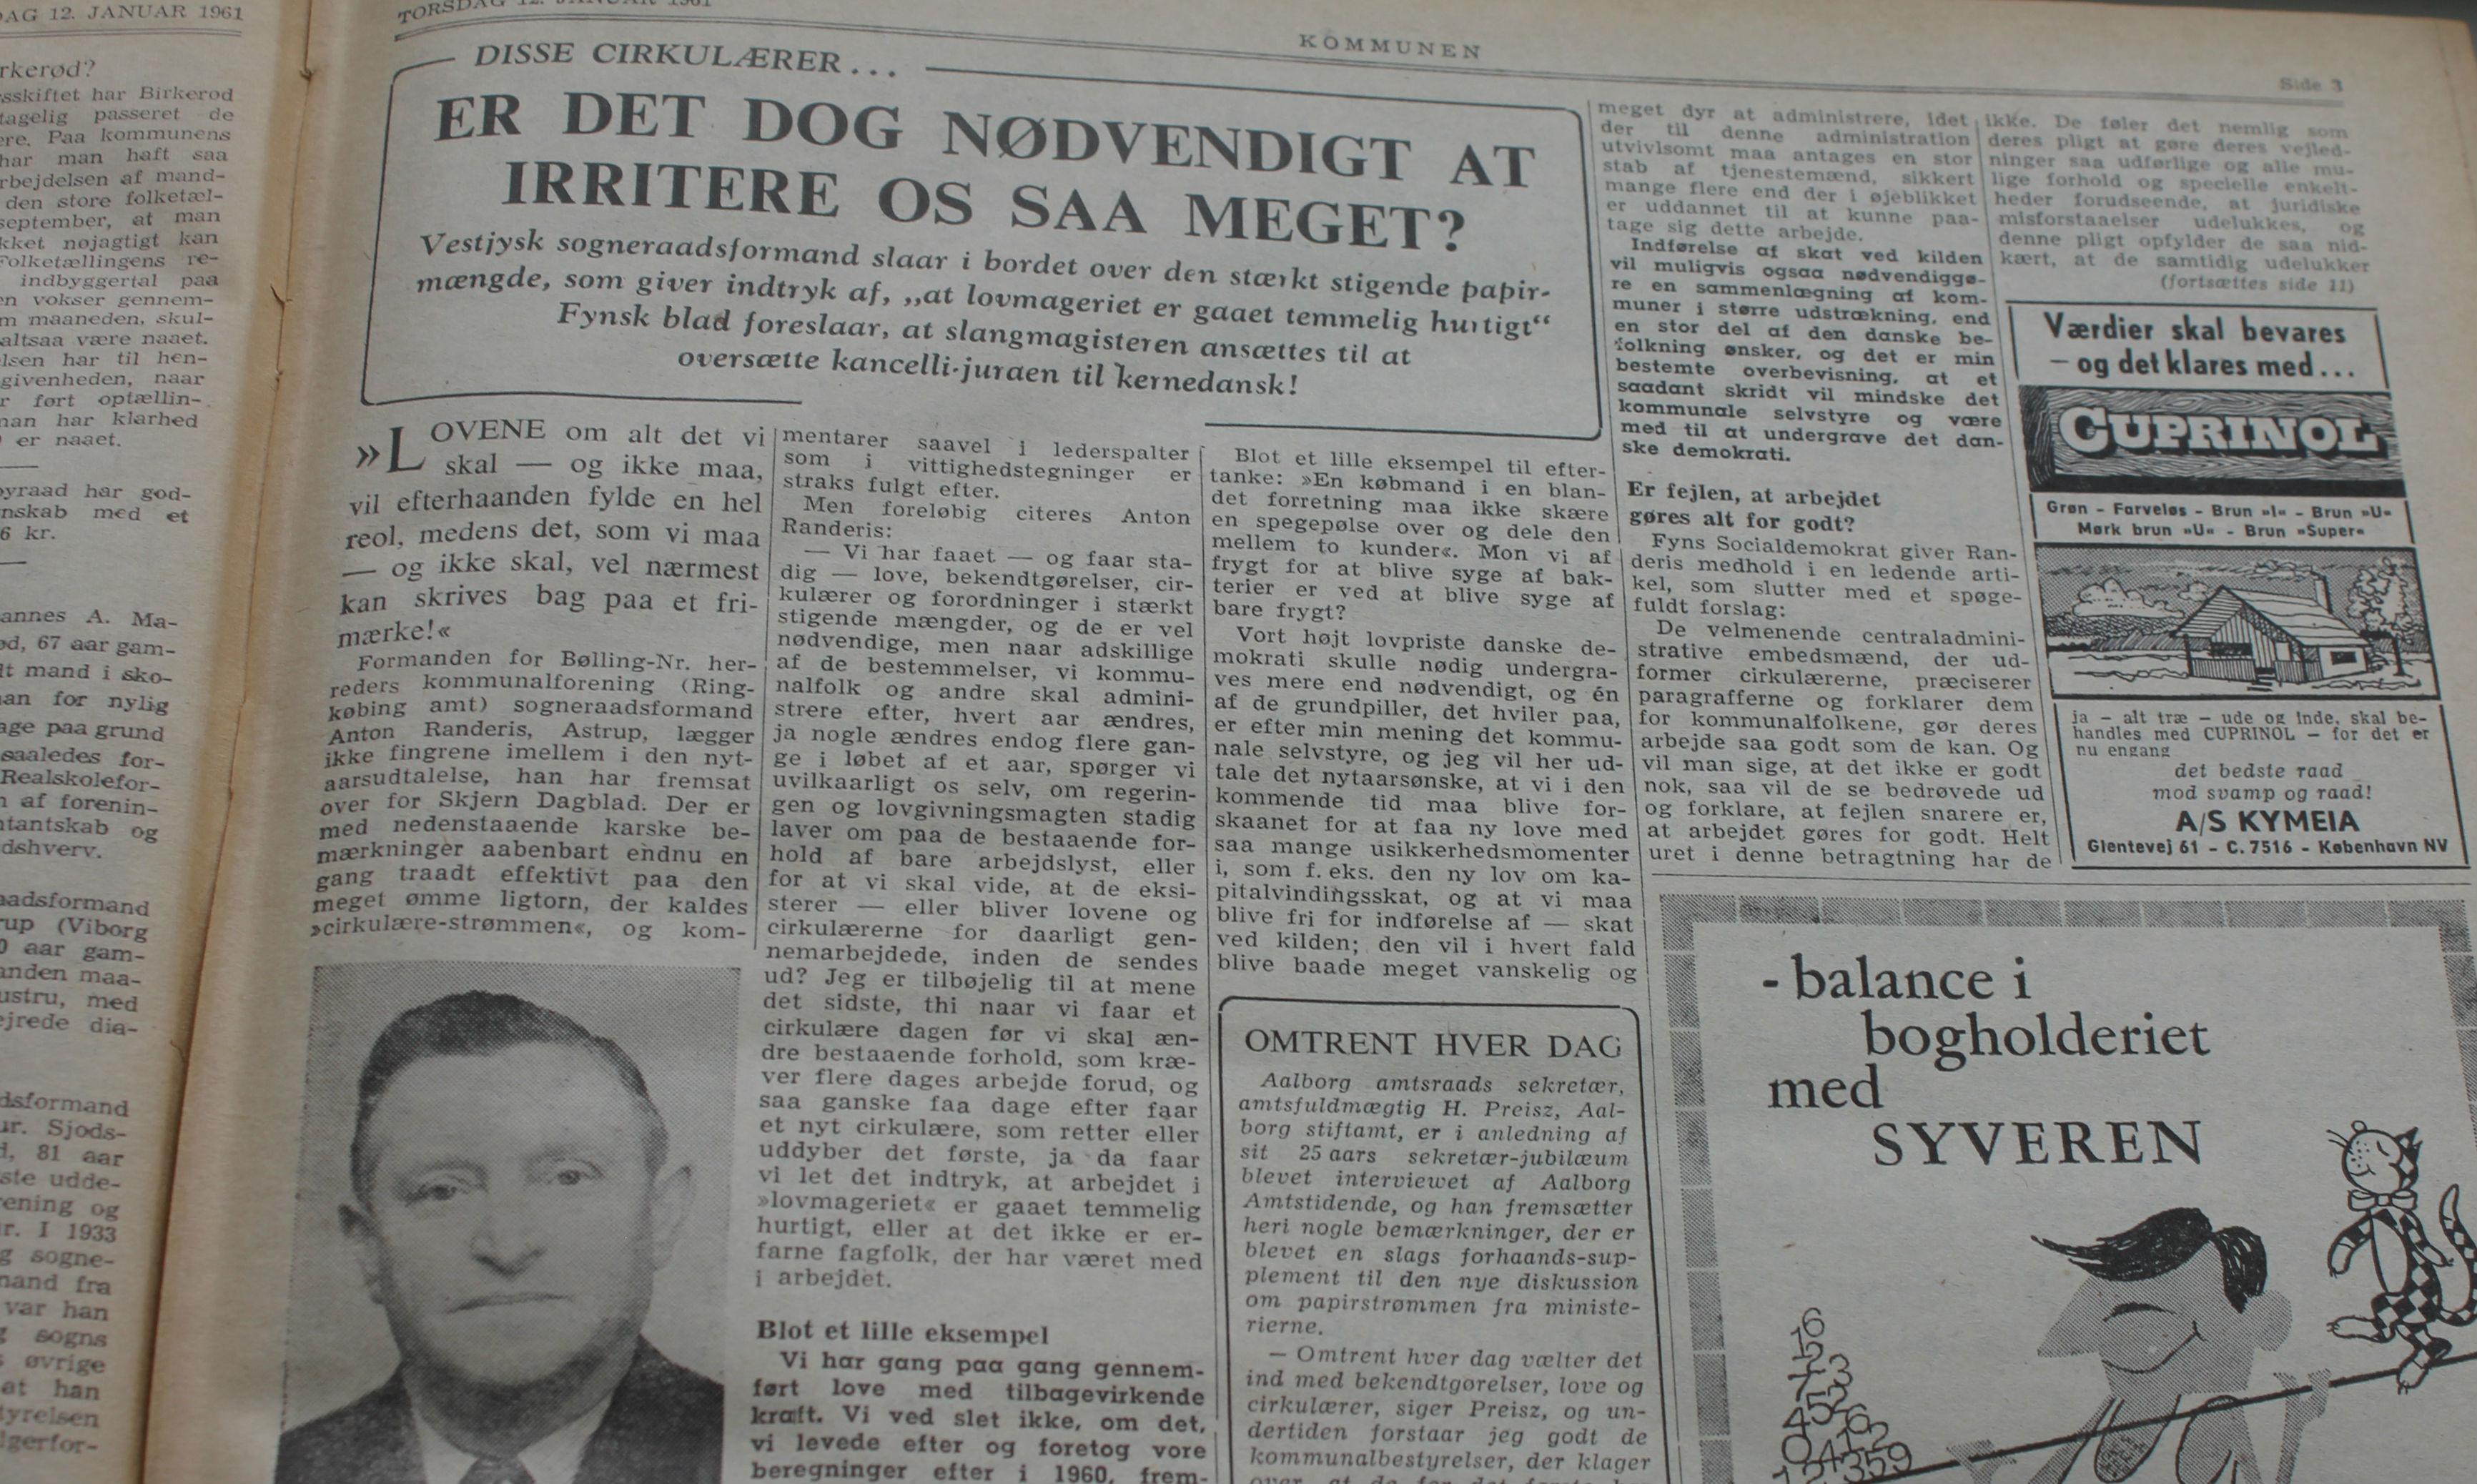 Artiklen blev bragt i Kommunen 12. januar 1961.